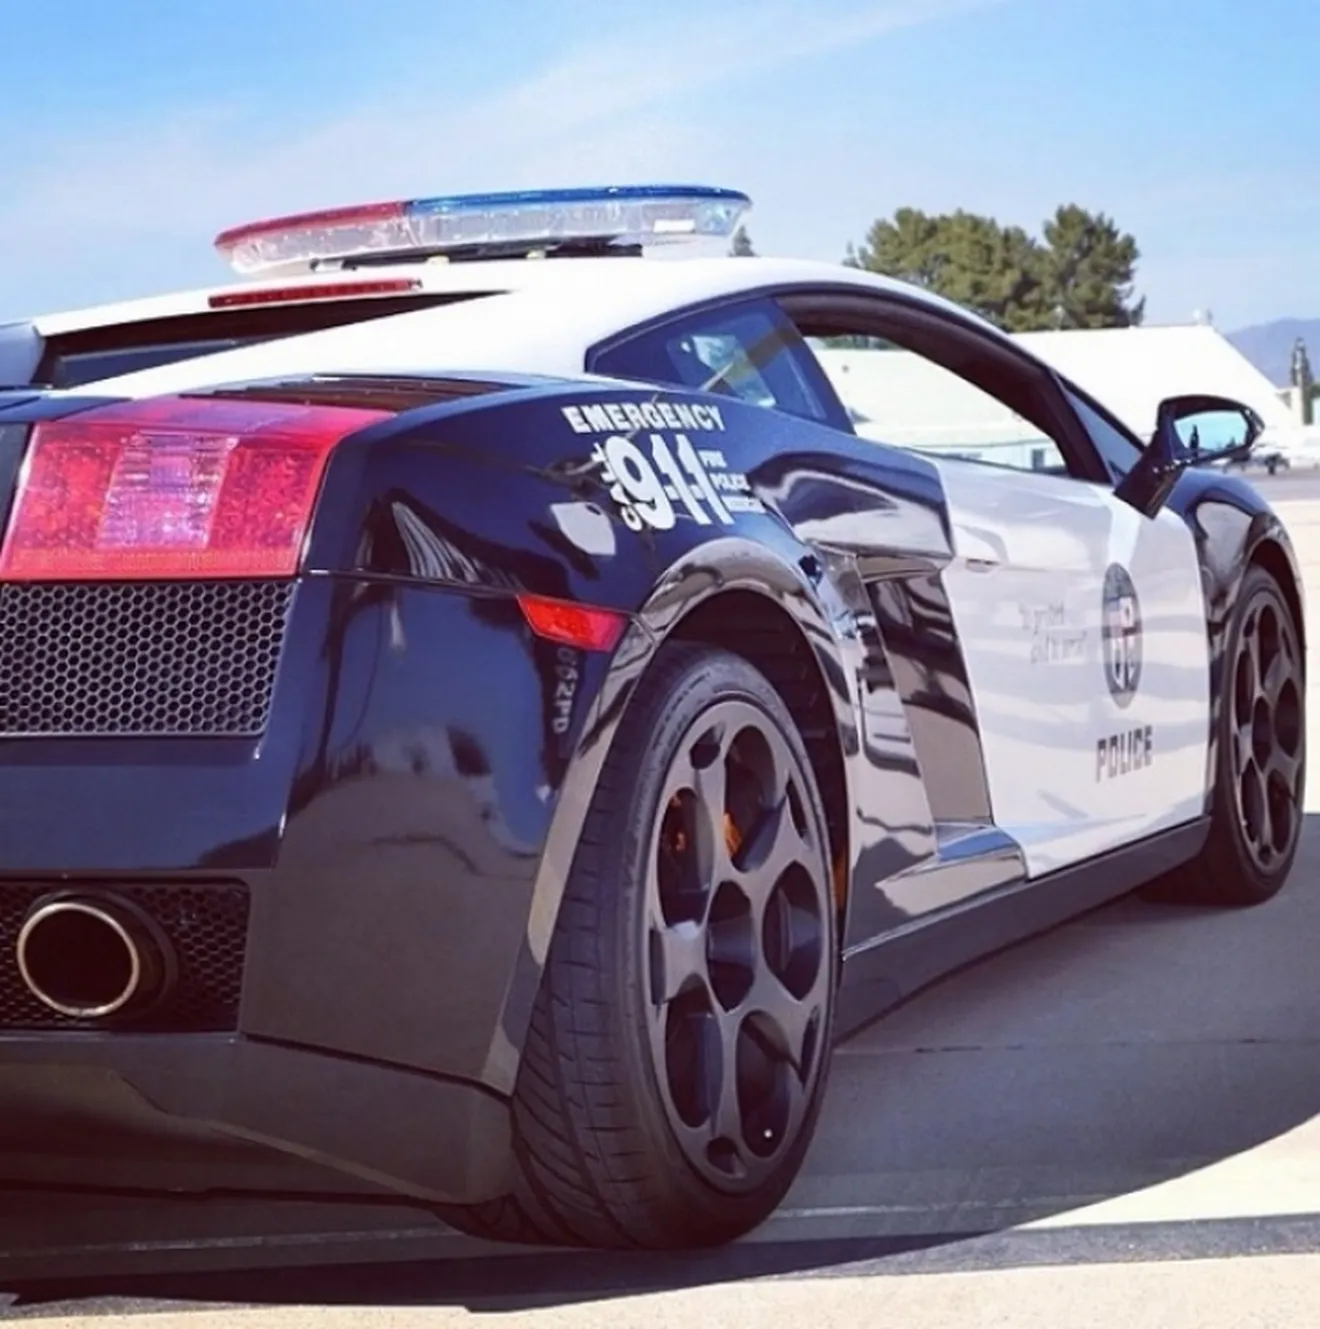 La Policía de Los Ángeles estrena un Lamborghini Gallardo